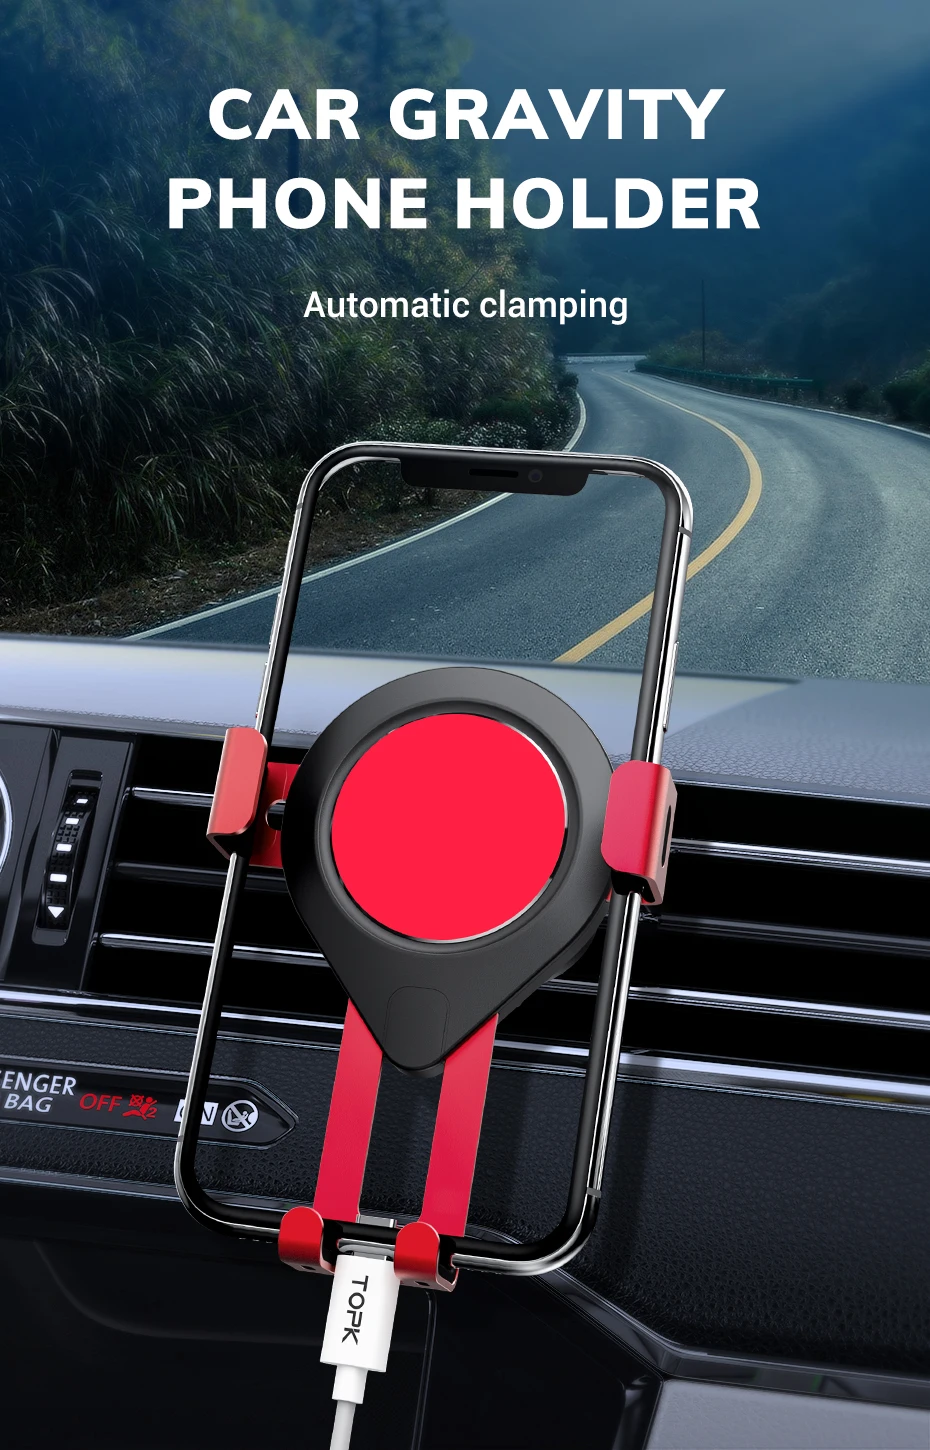 TOPK D17 гравитационный Автомобильный держатель для телефона в Автомобиле вентиляционное отверстие крепление держатель мобильного телефона Подставка для iPhone samsung Xiaomi huawei